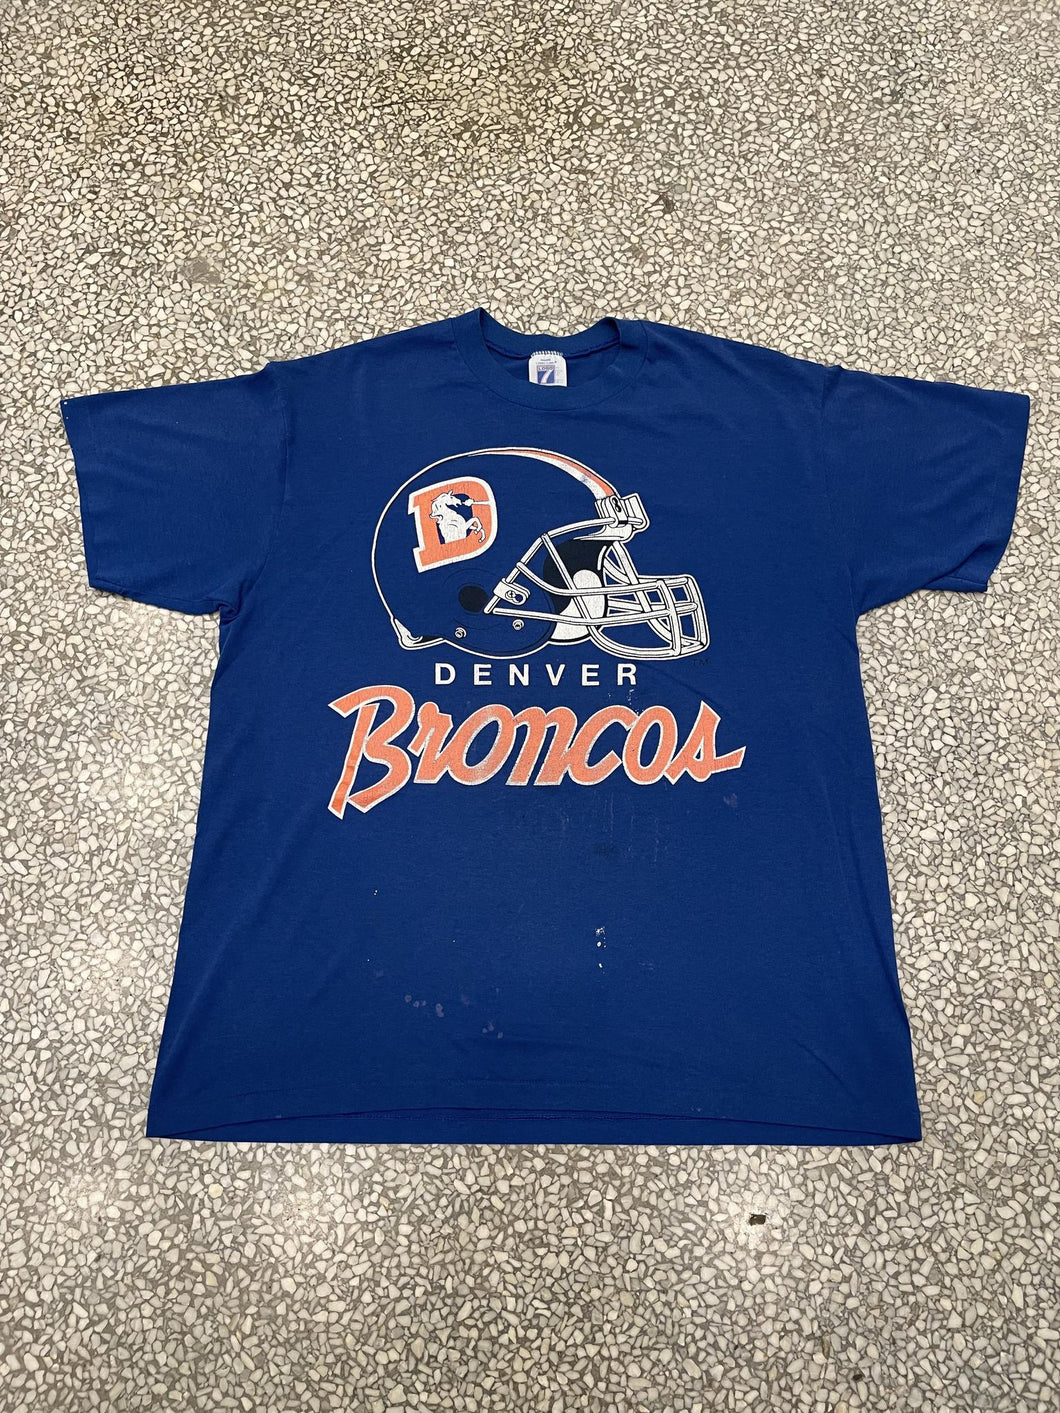 Denver Broncos Vintage 90s Helmet Paper Thin Blue ABC Vintage 